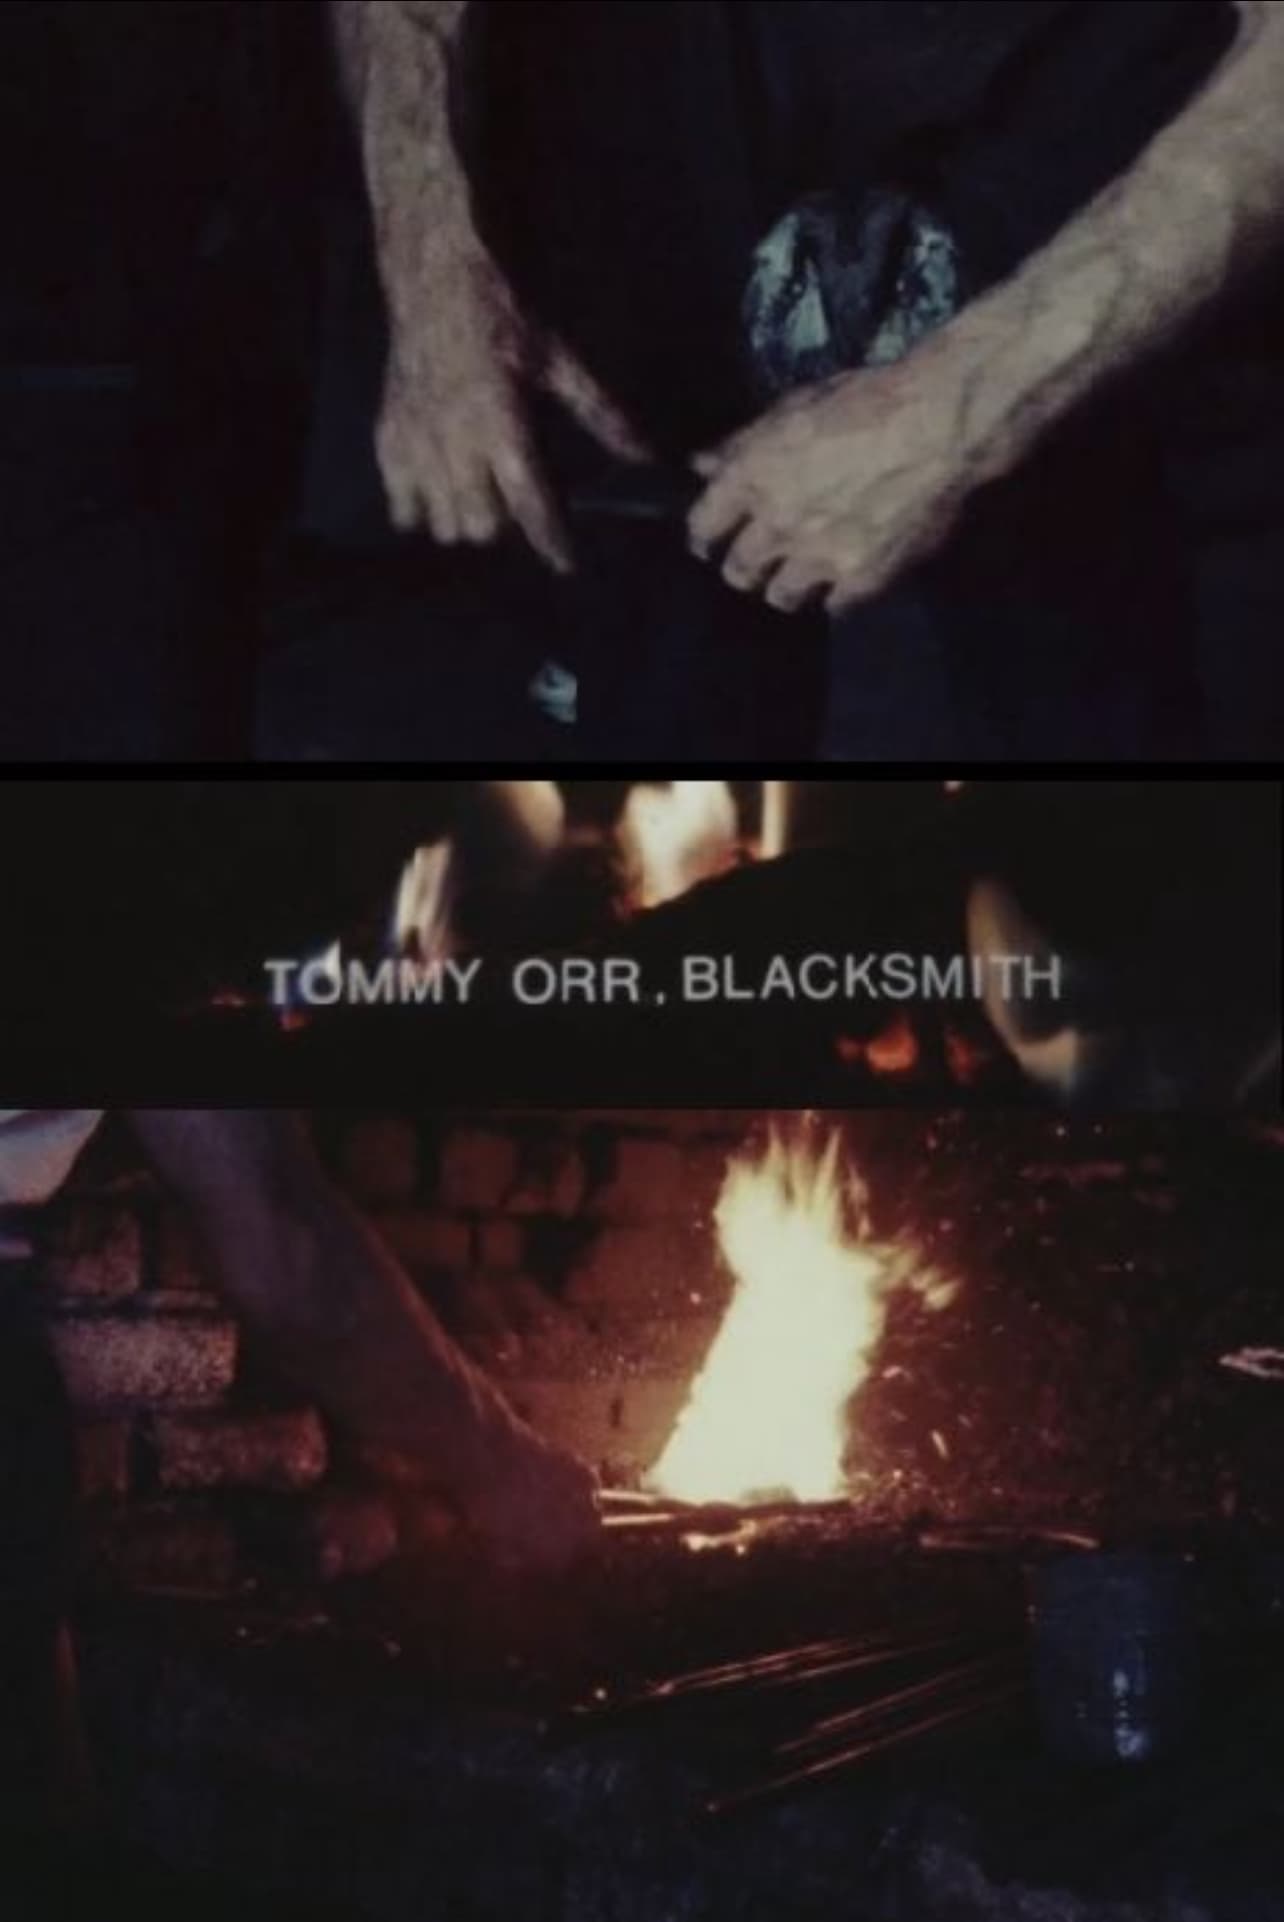 Tommy Orr, Blacksmith